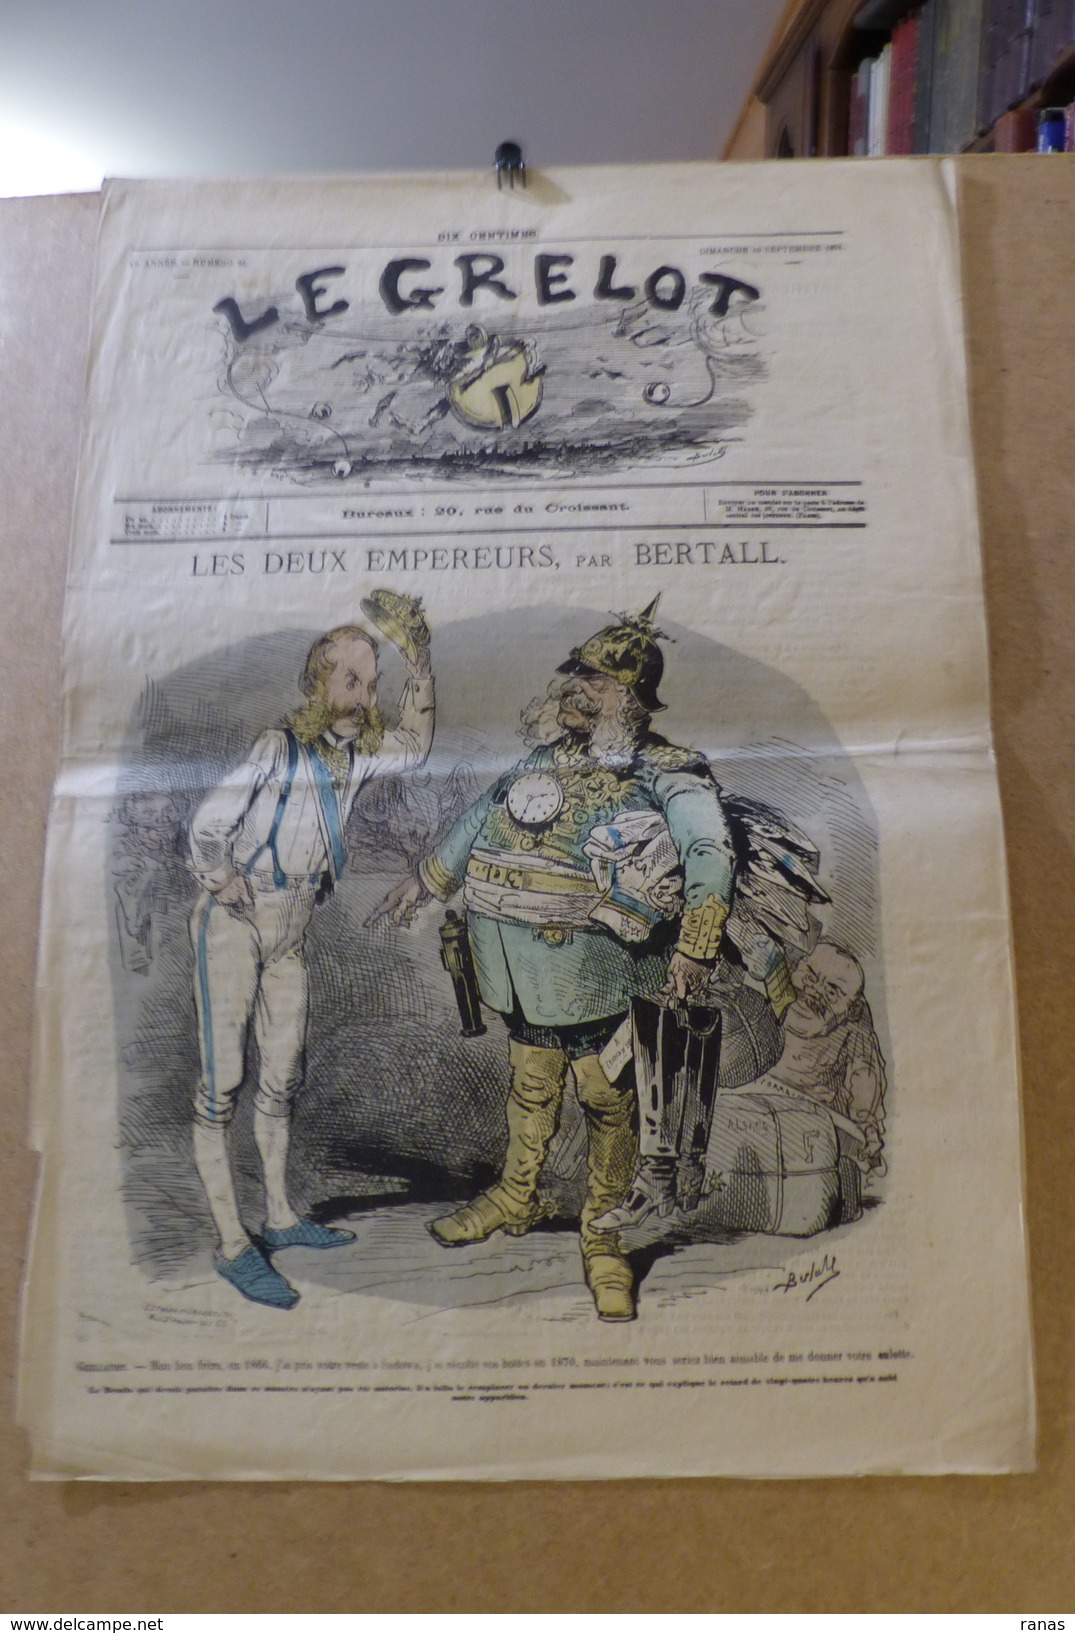 Revue Journal Le Grelot Satirique Caricature 50 X 32 Germany Allemagne Bismarck N° 22 De 1871 Guillaume - 1850 - 1899